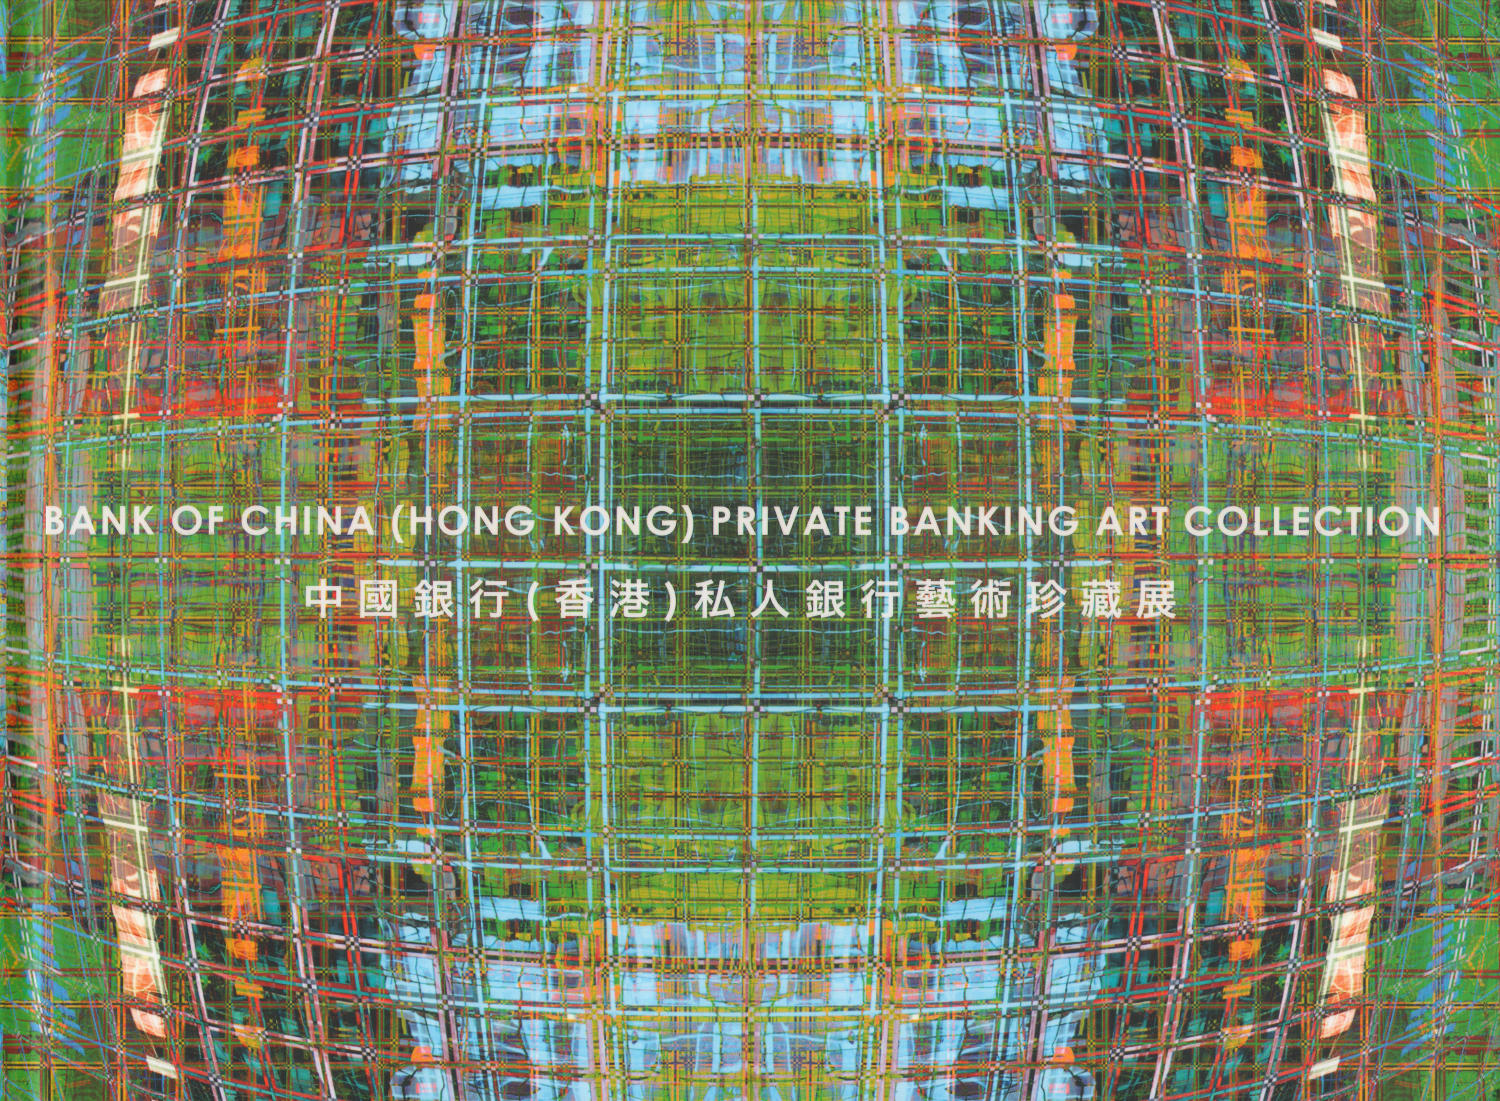 Bank of China (Hong Kong) Private Banking Art Collection